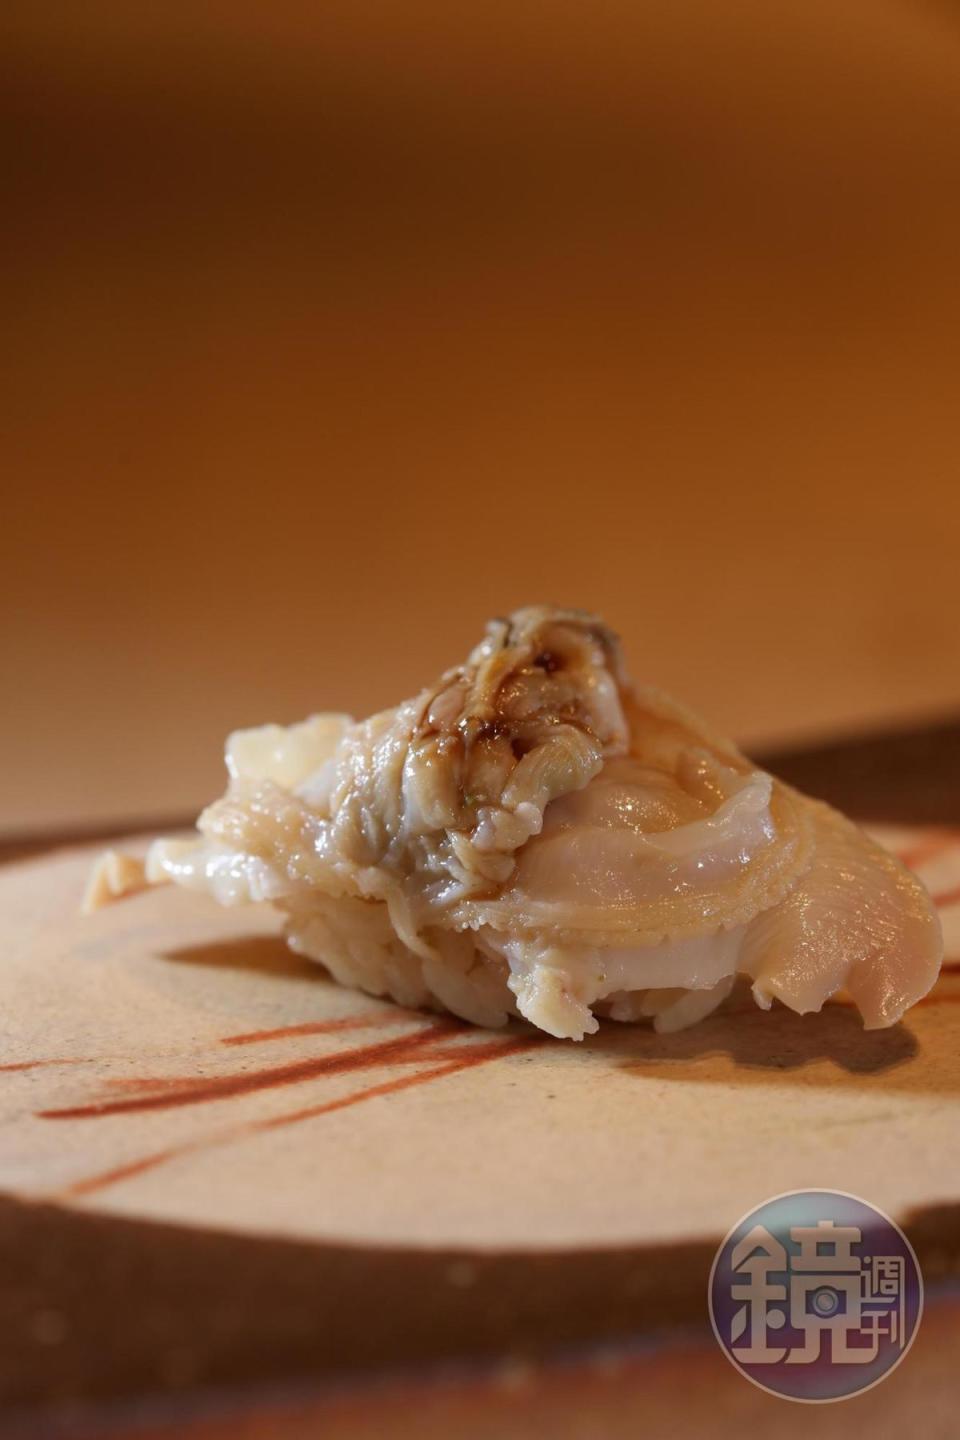 「蛤蠣」來自日本三重縣，只用清酒煮，再塗上蛤蠣湯汁與醬油濃縮後的醬汁，鮮甜原汁原味。